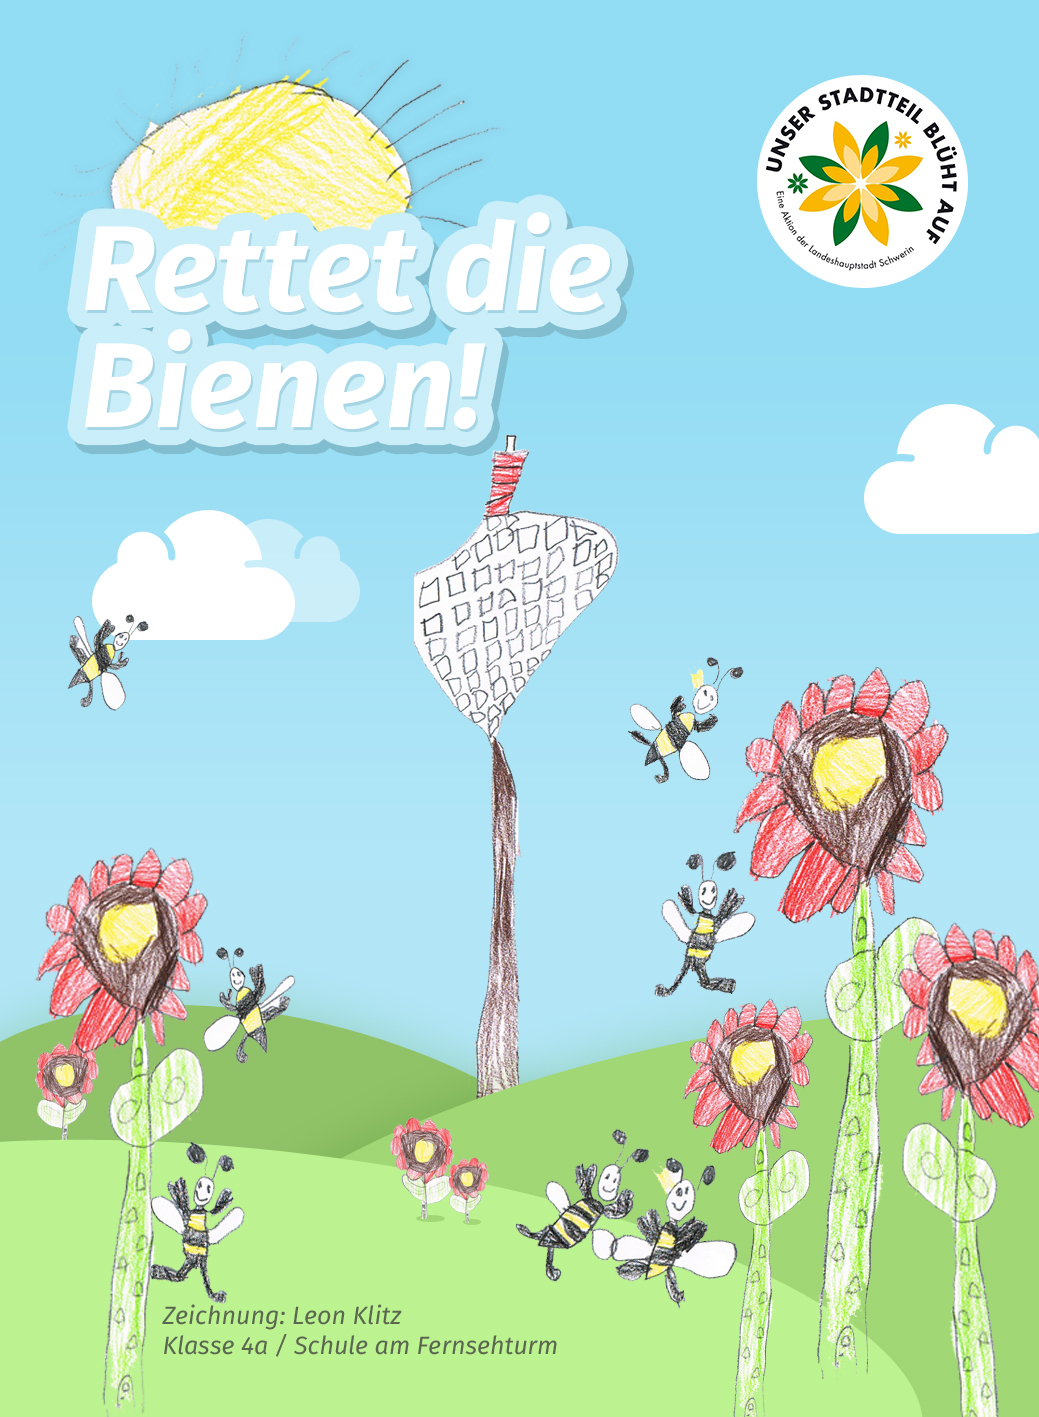 Neu-Zippendorf und Mueßer Holz: Wildblumensamen für die Bienen